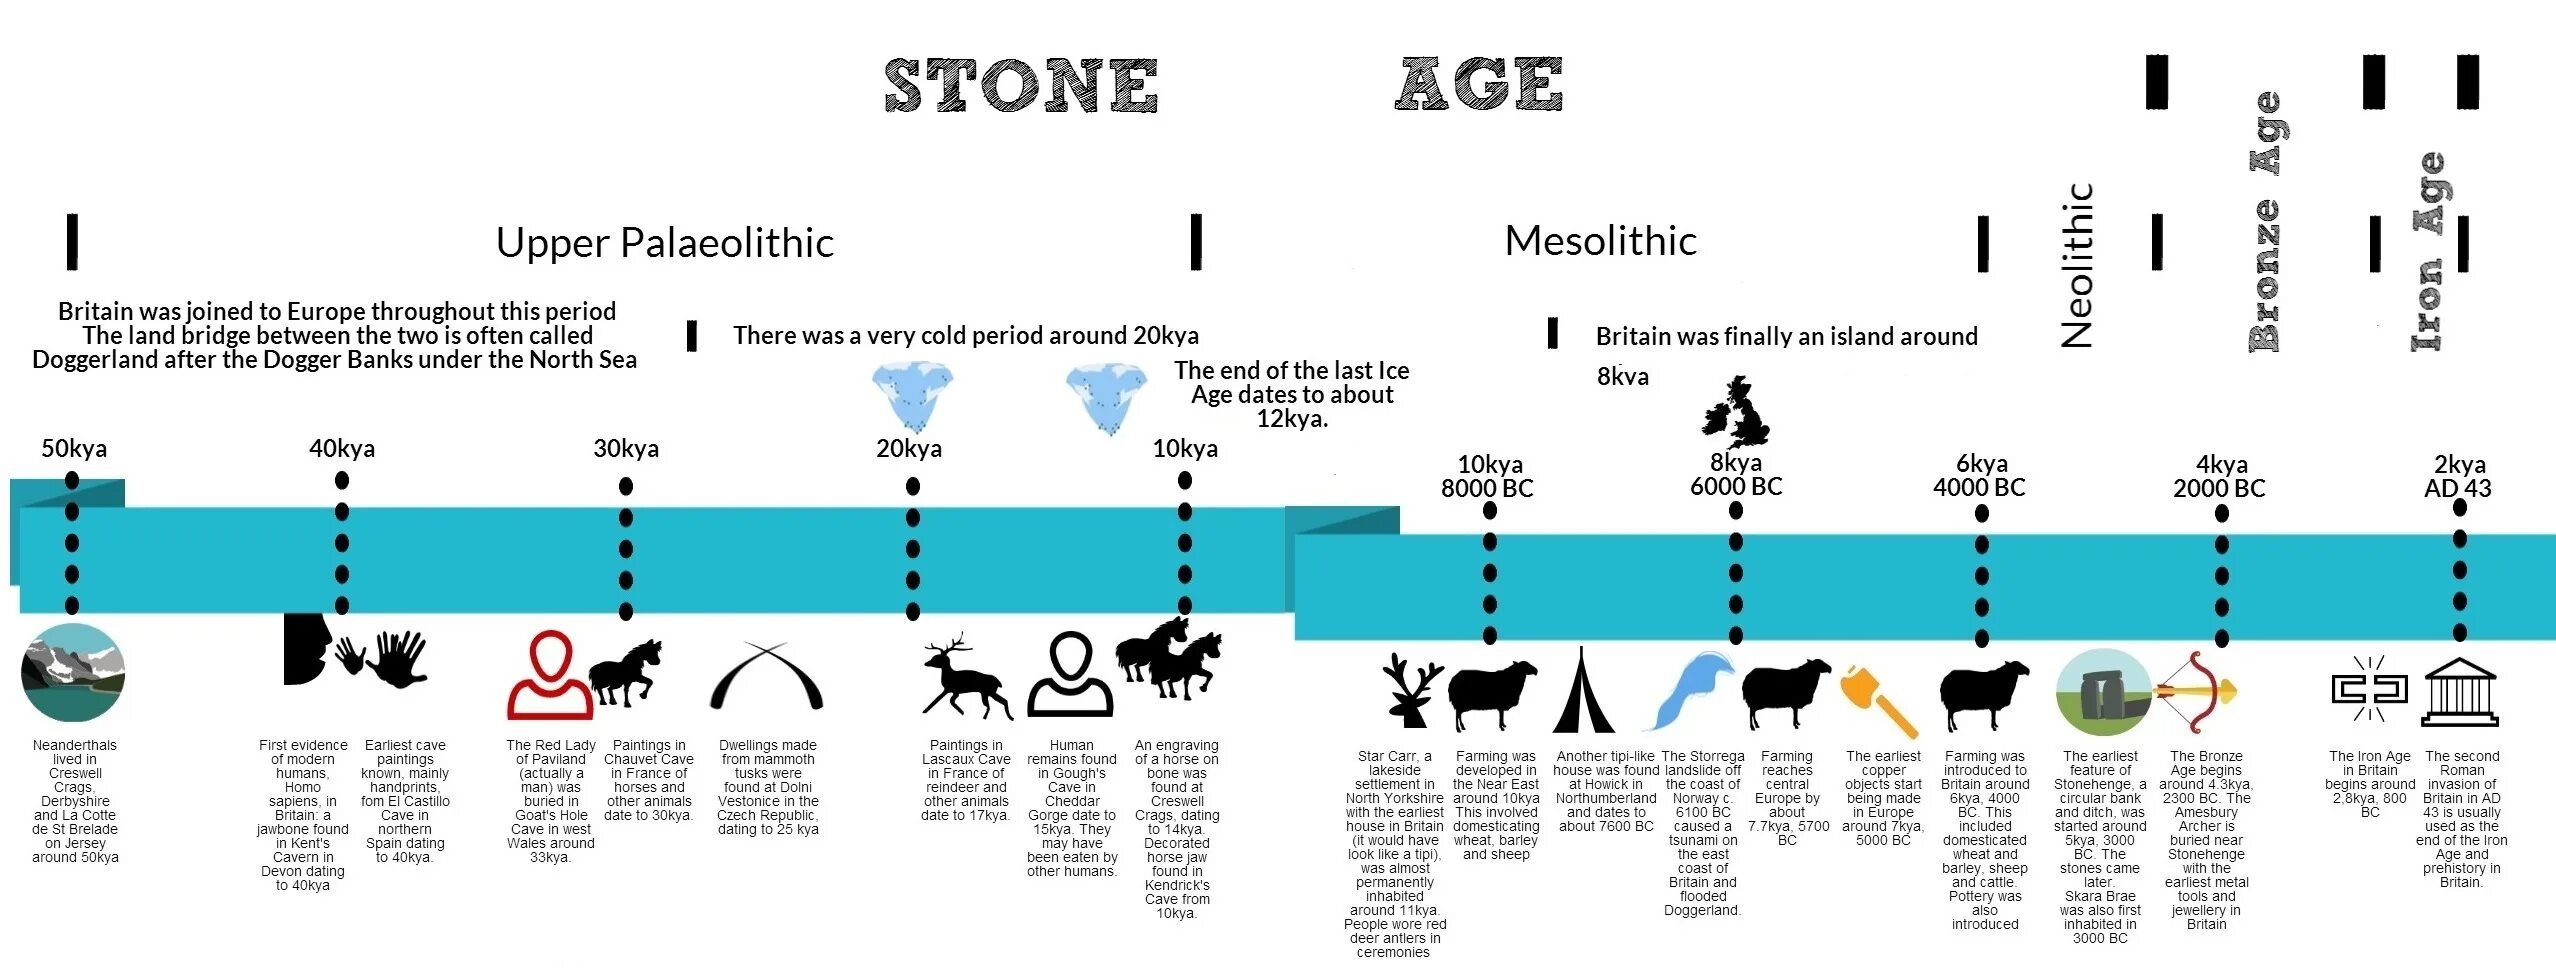 Stone age timeline. Timeline история. Каменный век инфографика. Таймлайн инфографика. Age periods